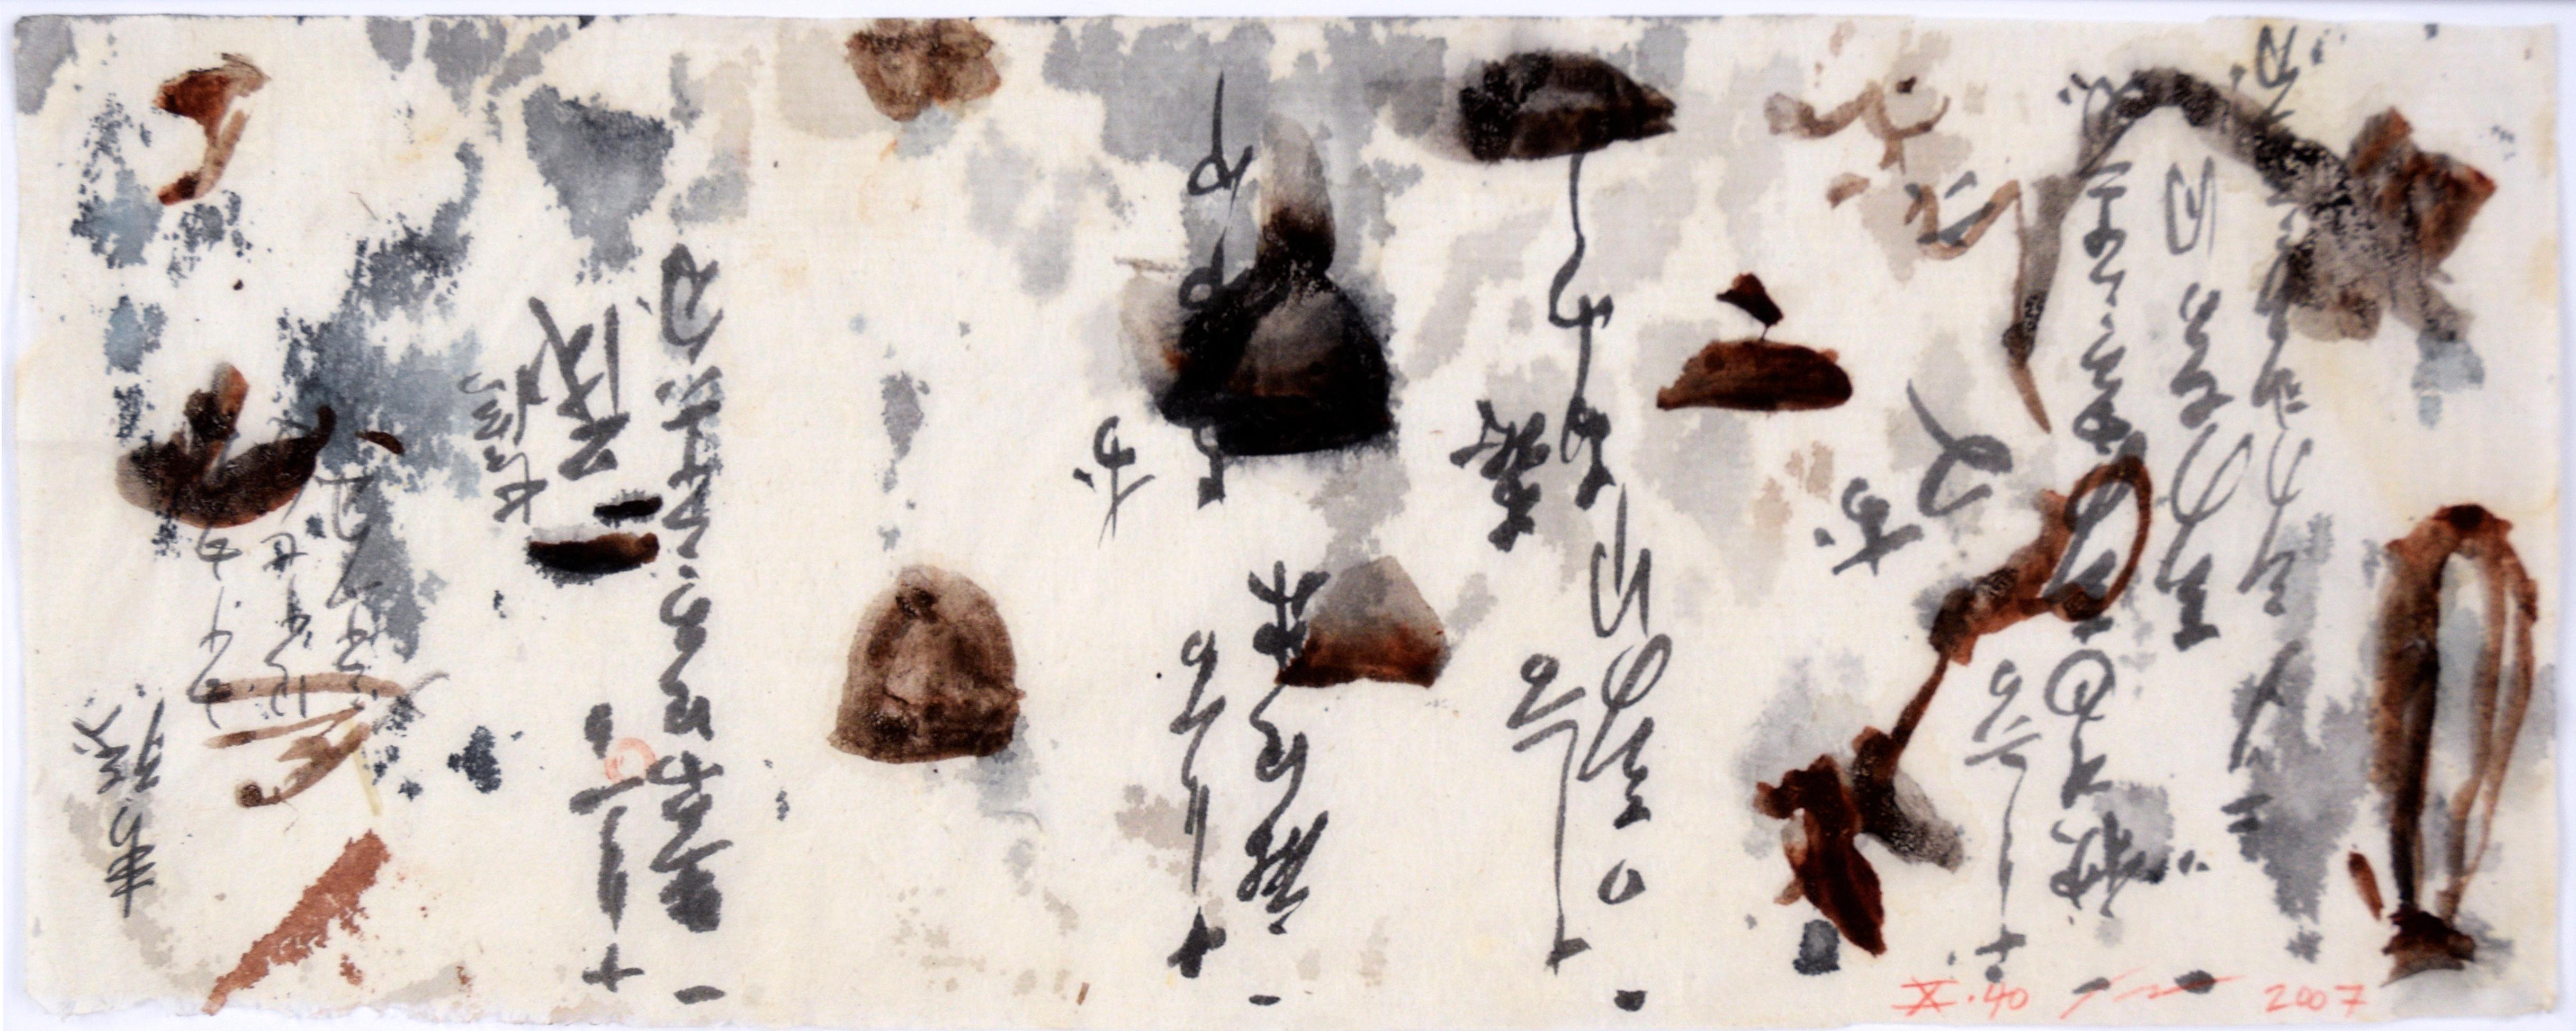 Calligraphie abstraite Panorama III - Calligraphie japonaise sur papier de riz - Painting de Michael Pauker 